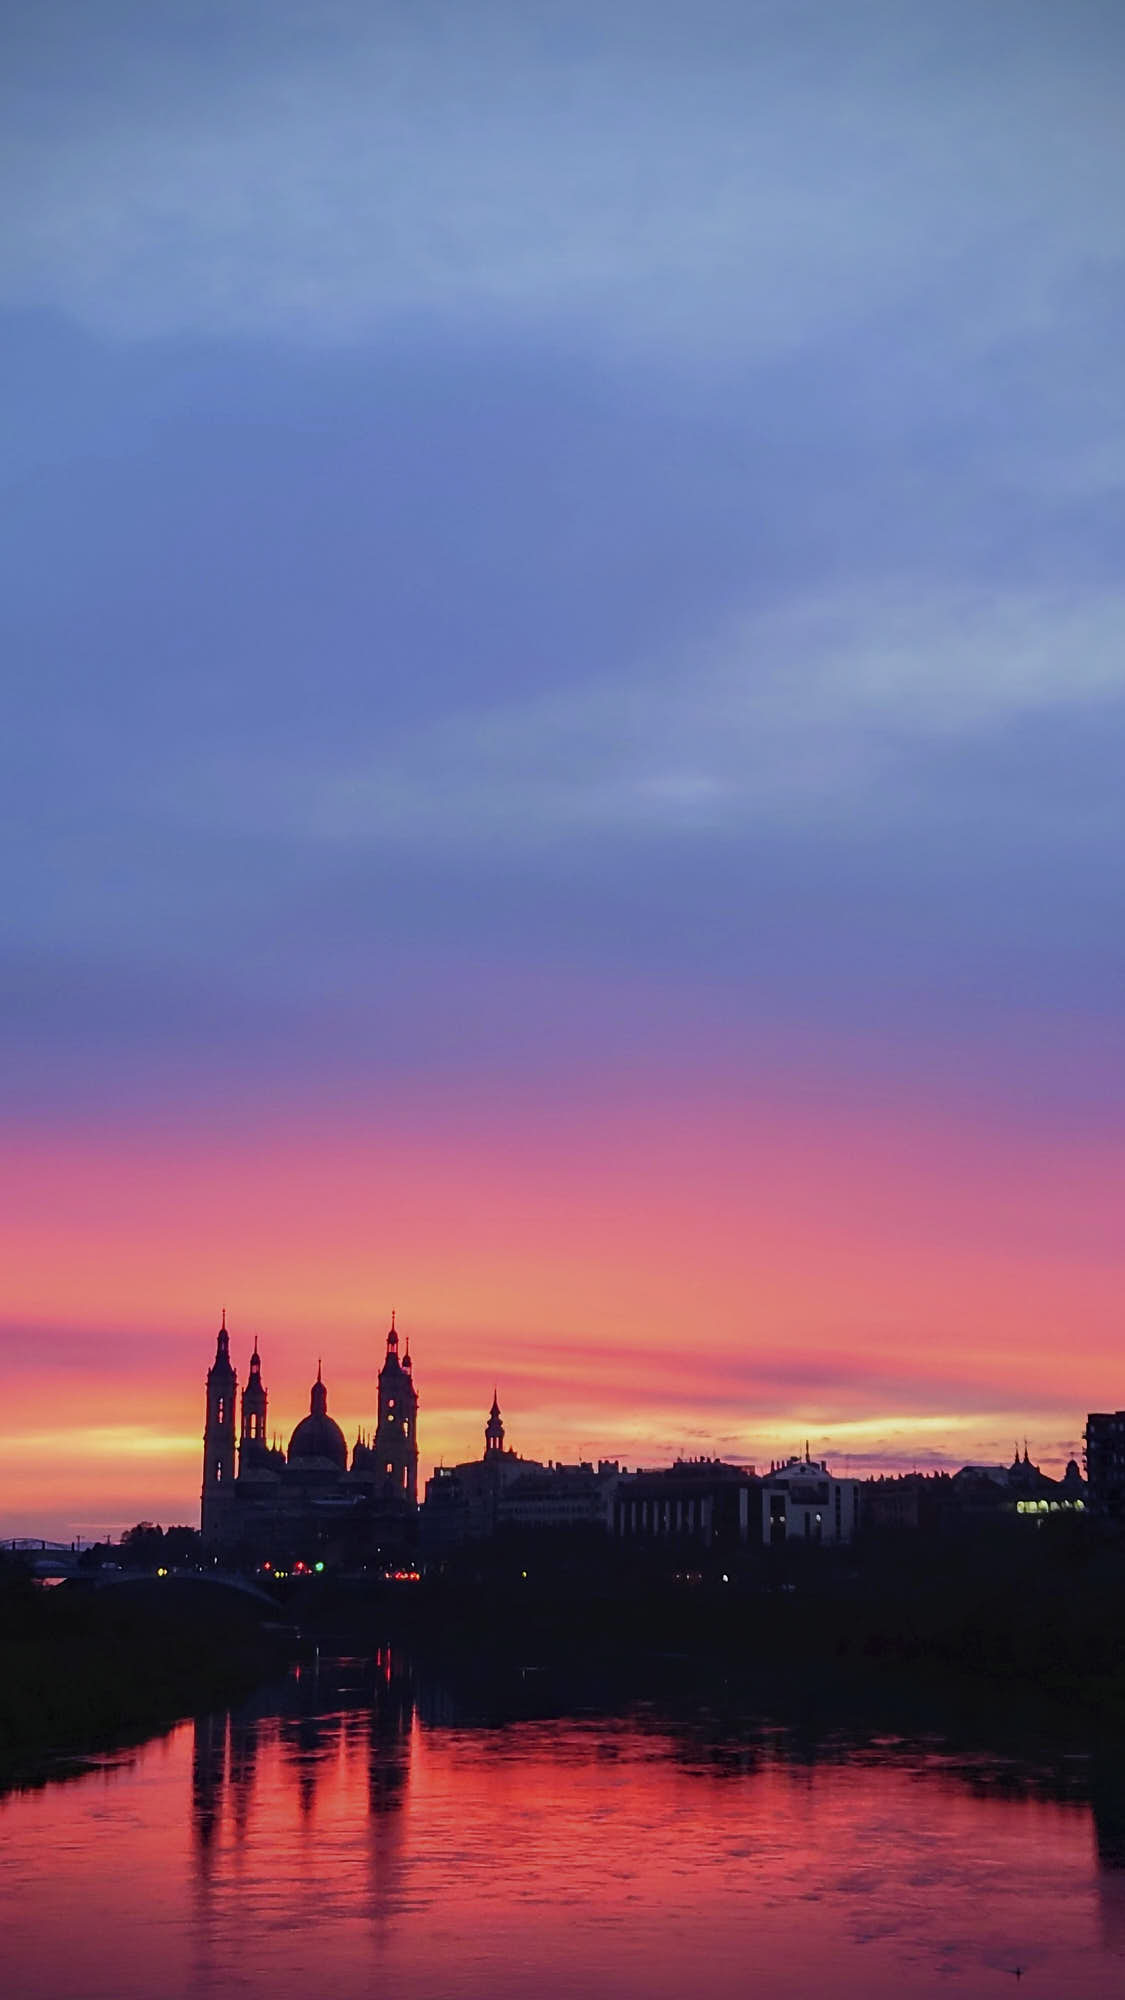 Turismo. Amanecer sobre el Pilar, Zaragoza. Foto tomada con el móvil, por Amaury Cabrera.